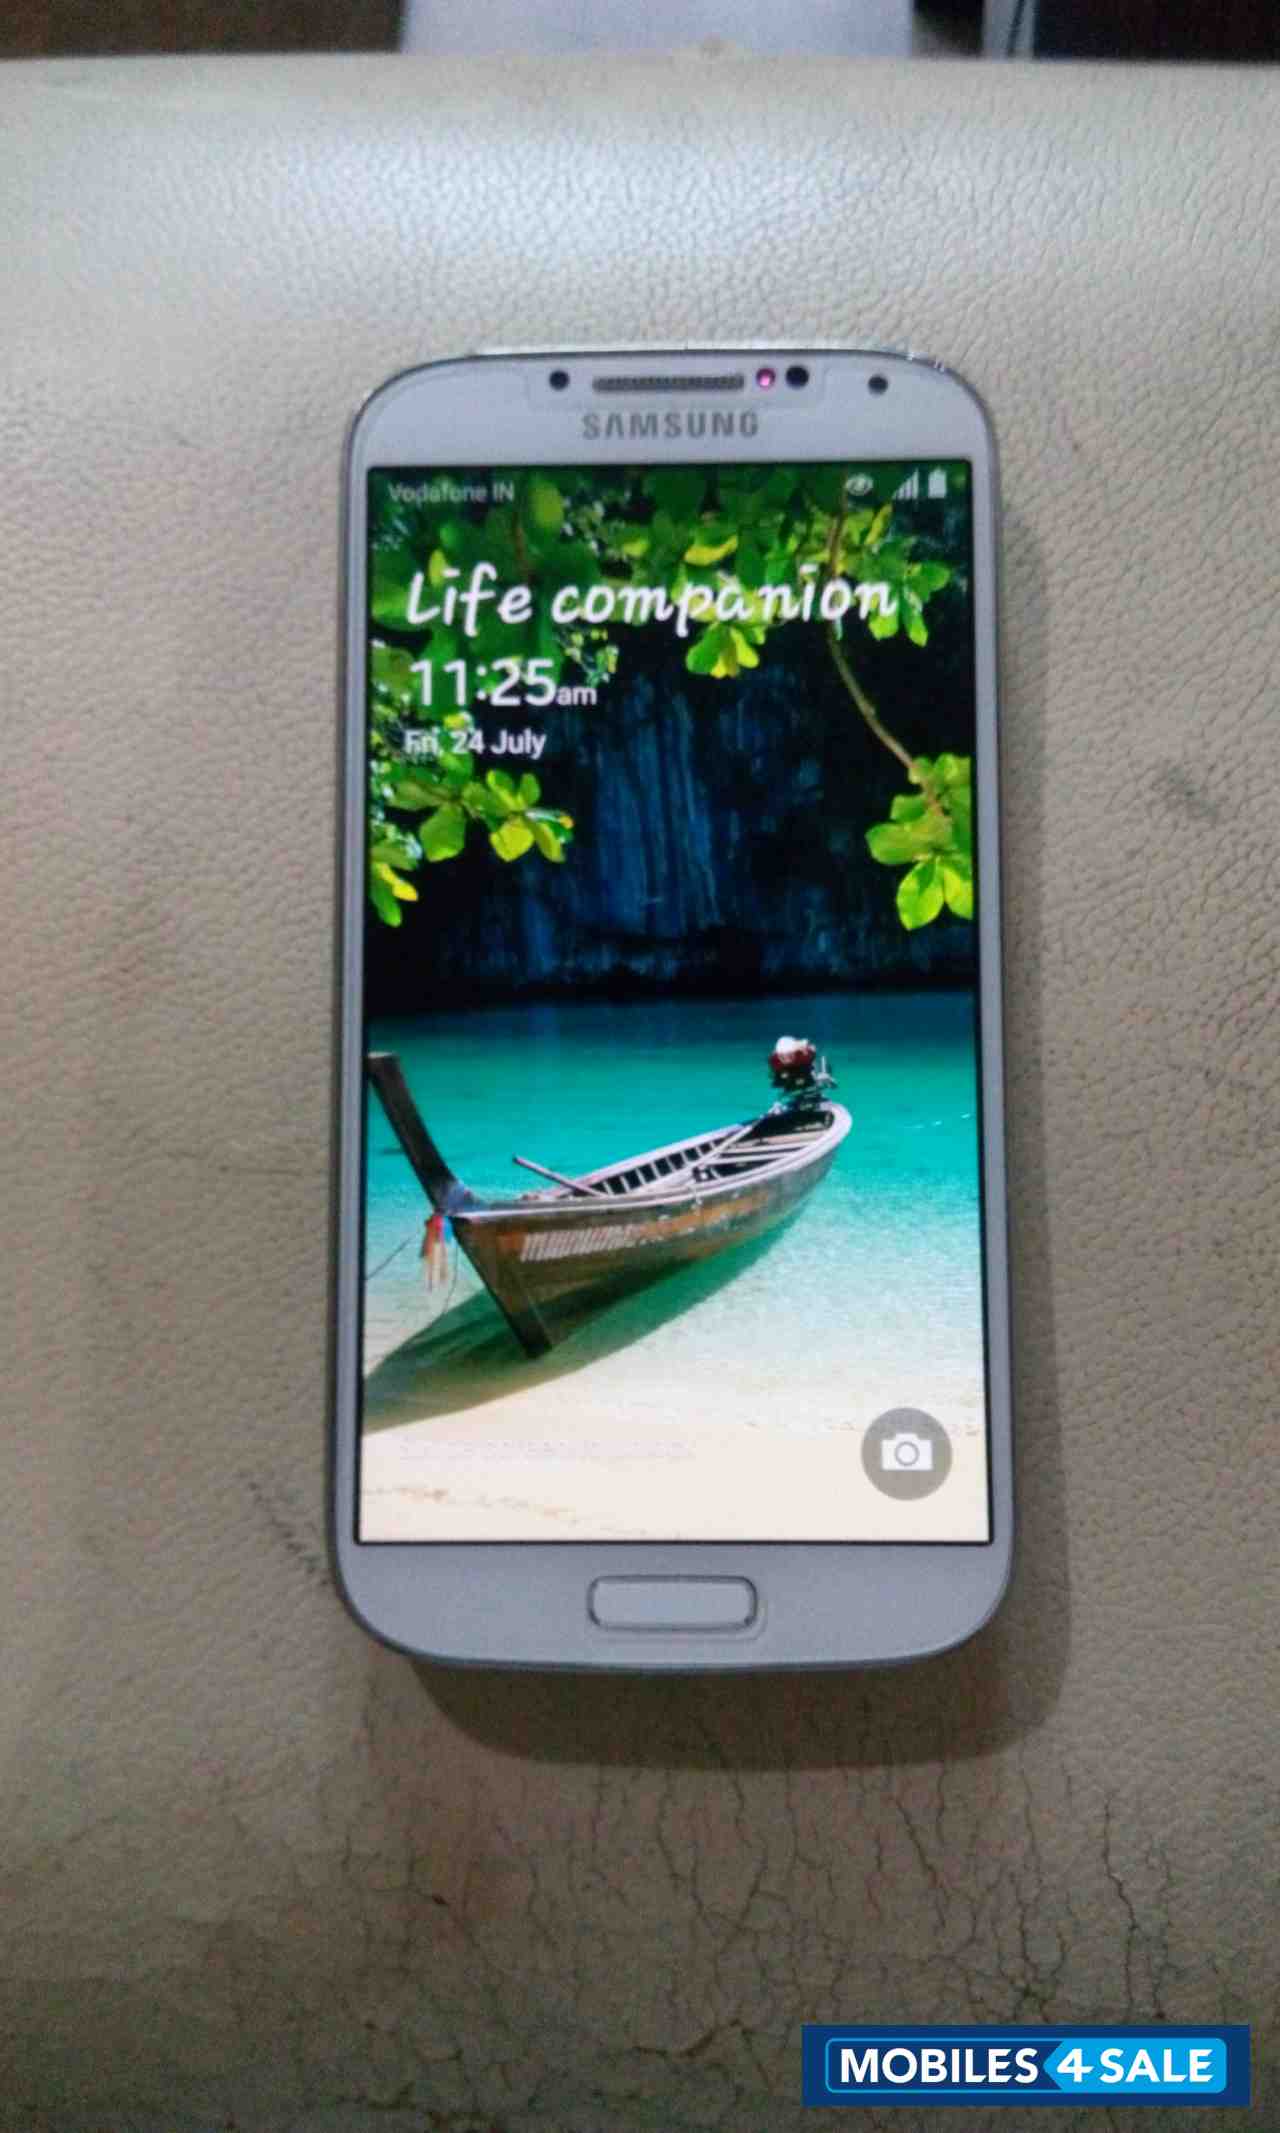 White Samsung Galaxy S4